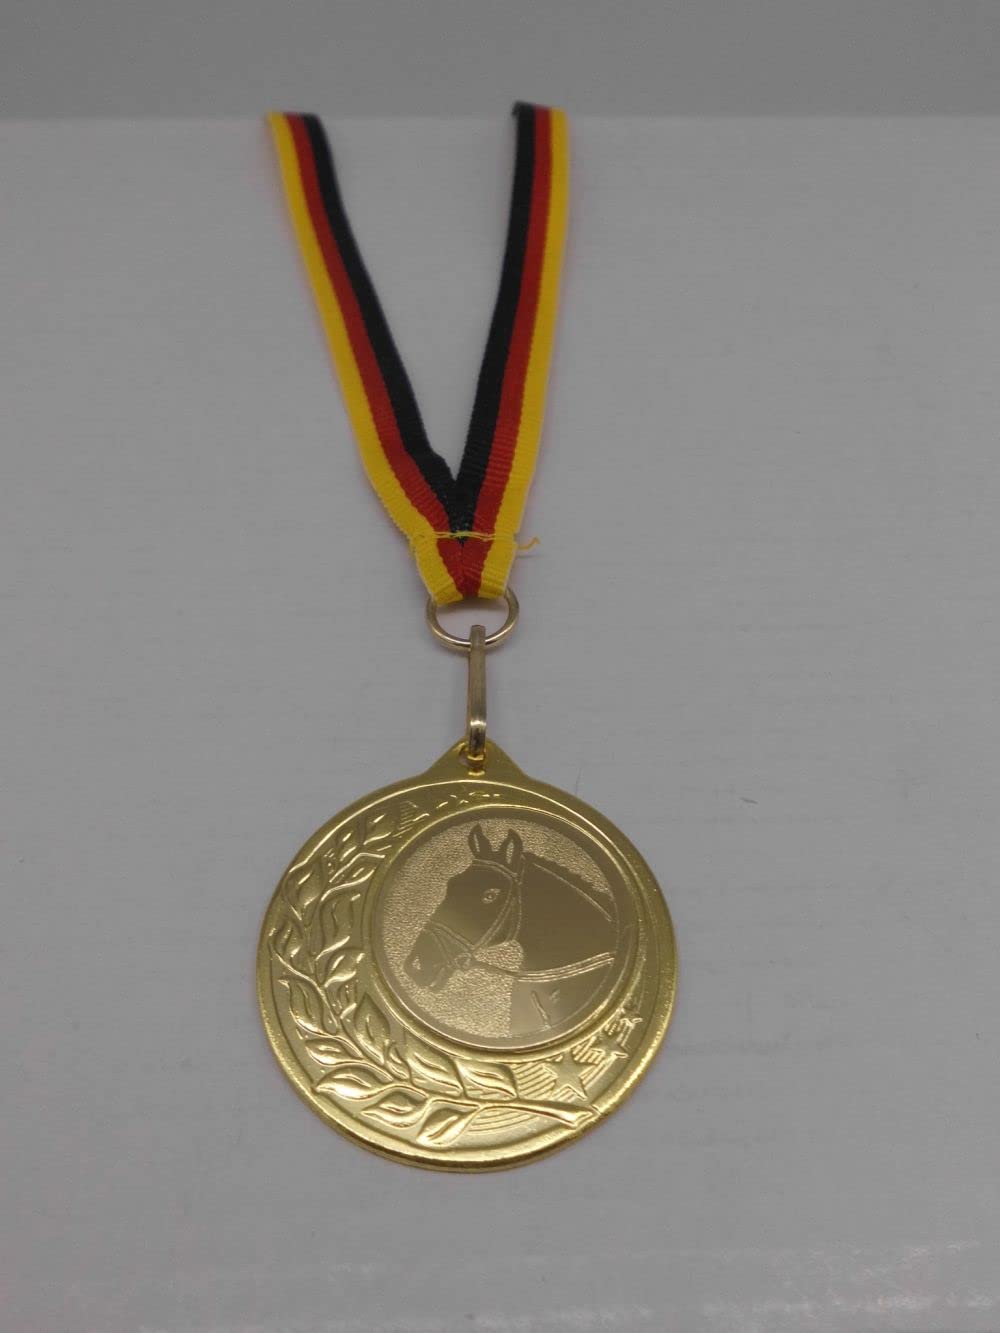 Fanshop Lünen 20 Stück Medaillen - aus Stahl 40mm / Gold - inkl. Medaillen Band - Emblem 25mm (Gold) - Reiten - Dressur - Pferde - (9283)